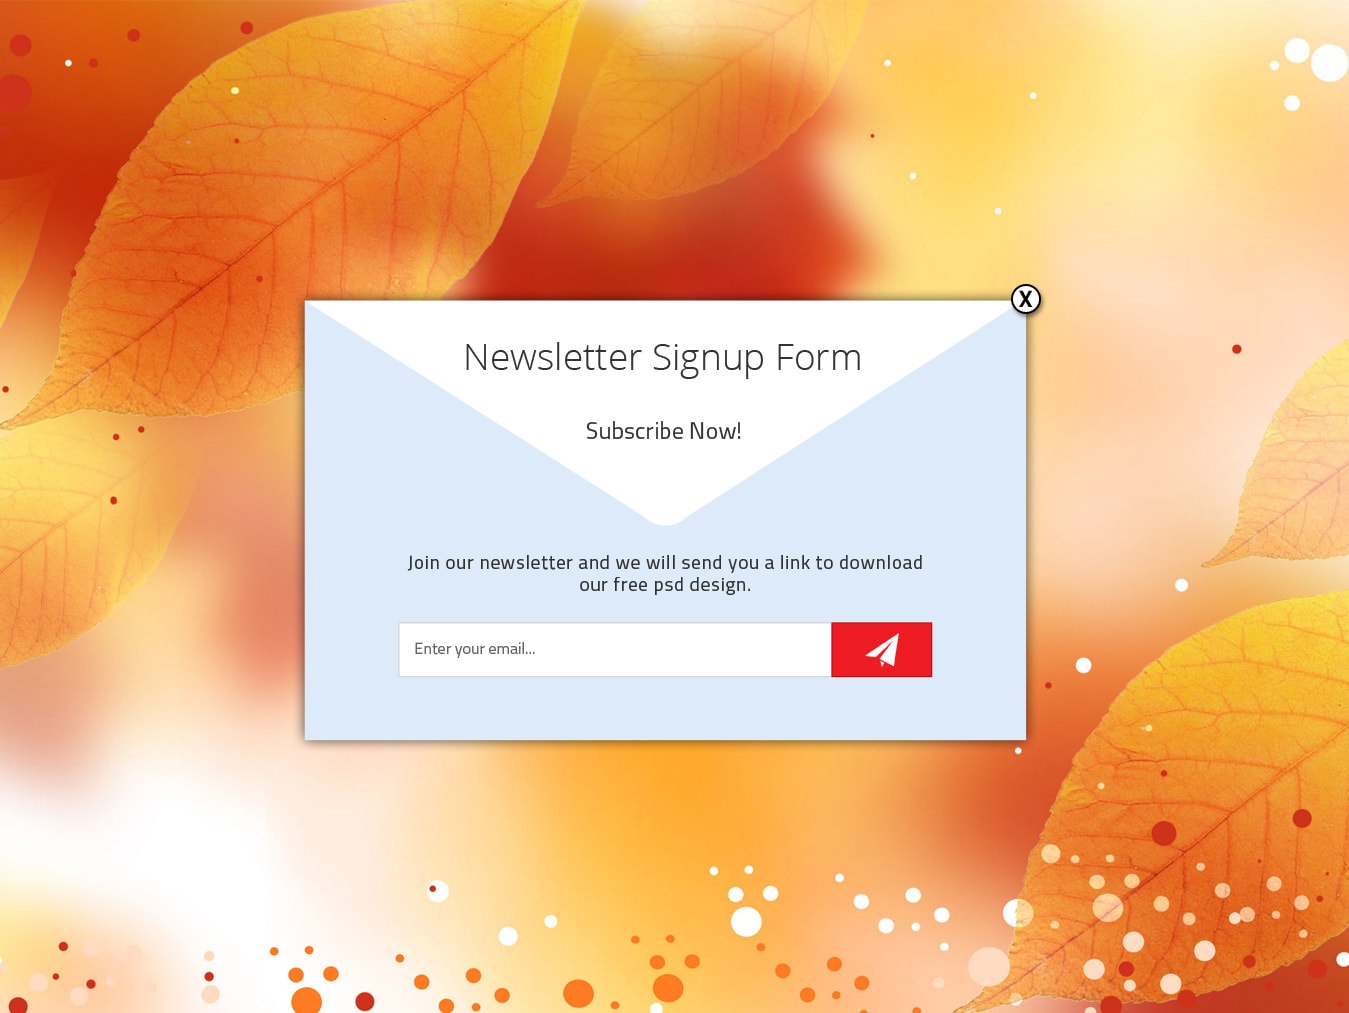 Newsletter signup form free psd design